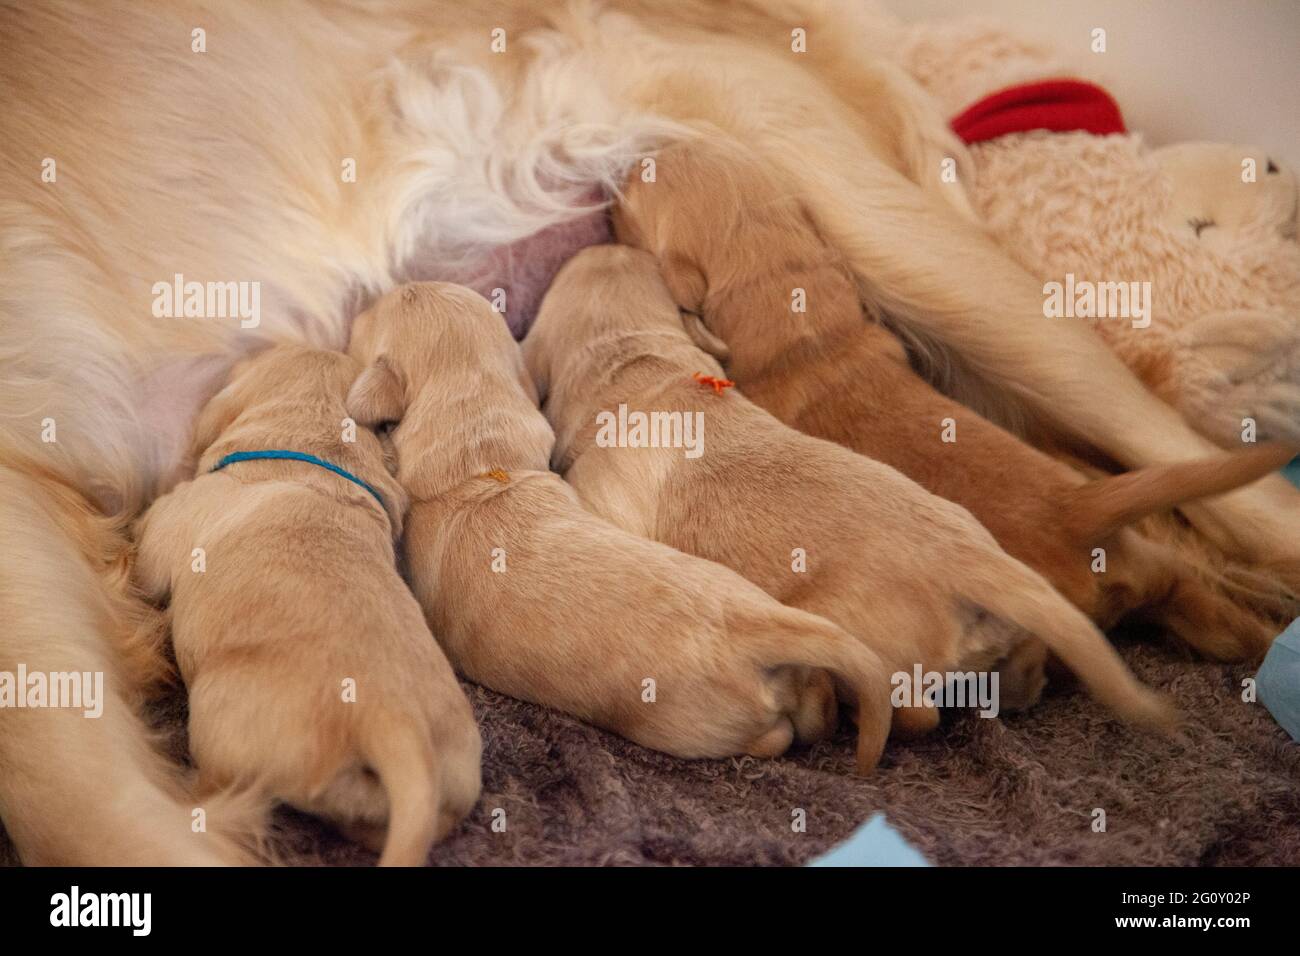 les chiens dorés très petits montrent leur queue et leur bum comme s'ils s'allaiter Banque D'Images